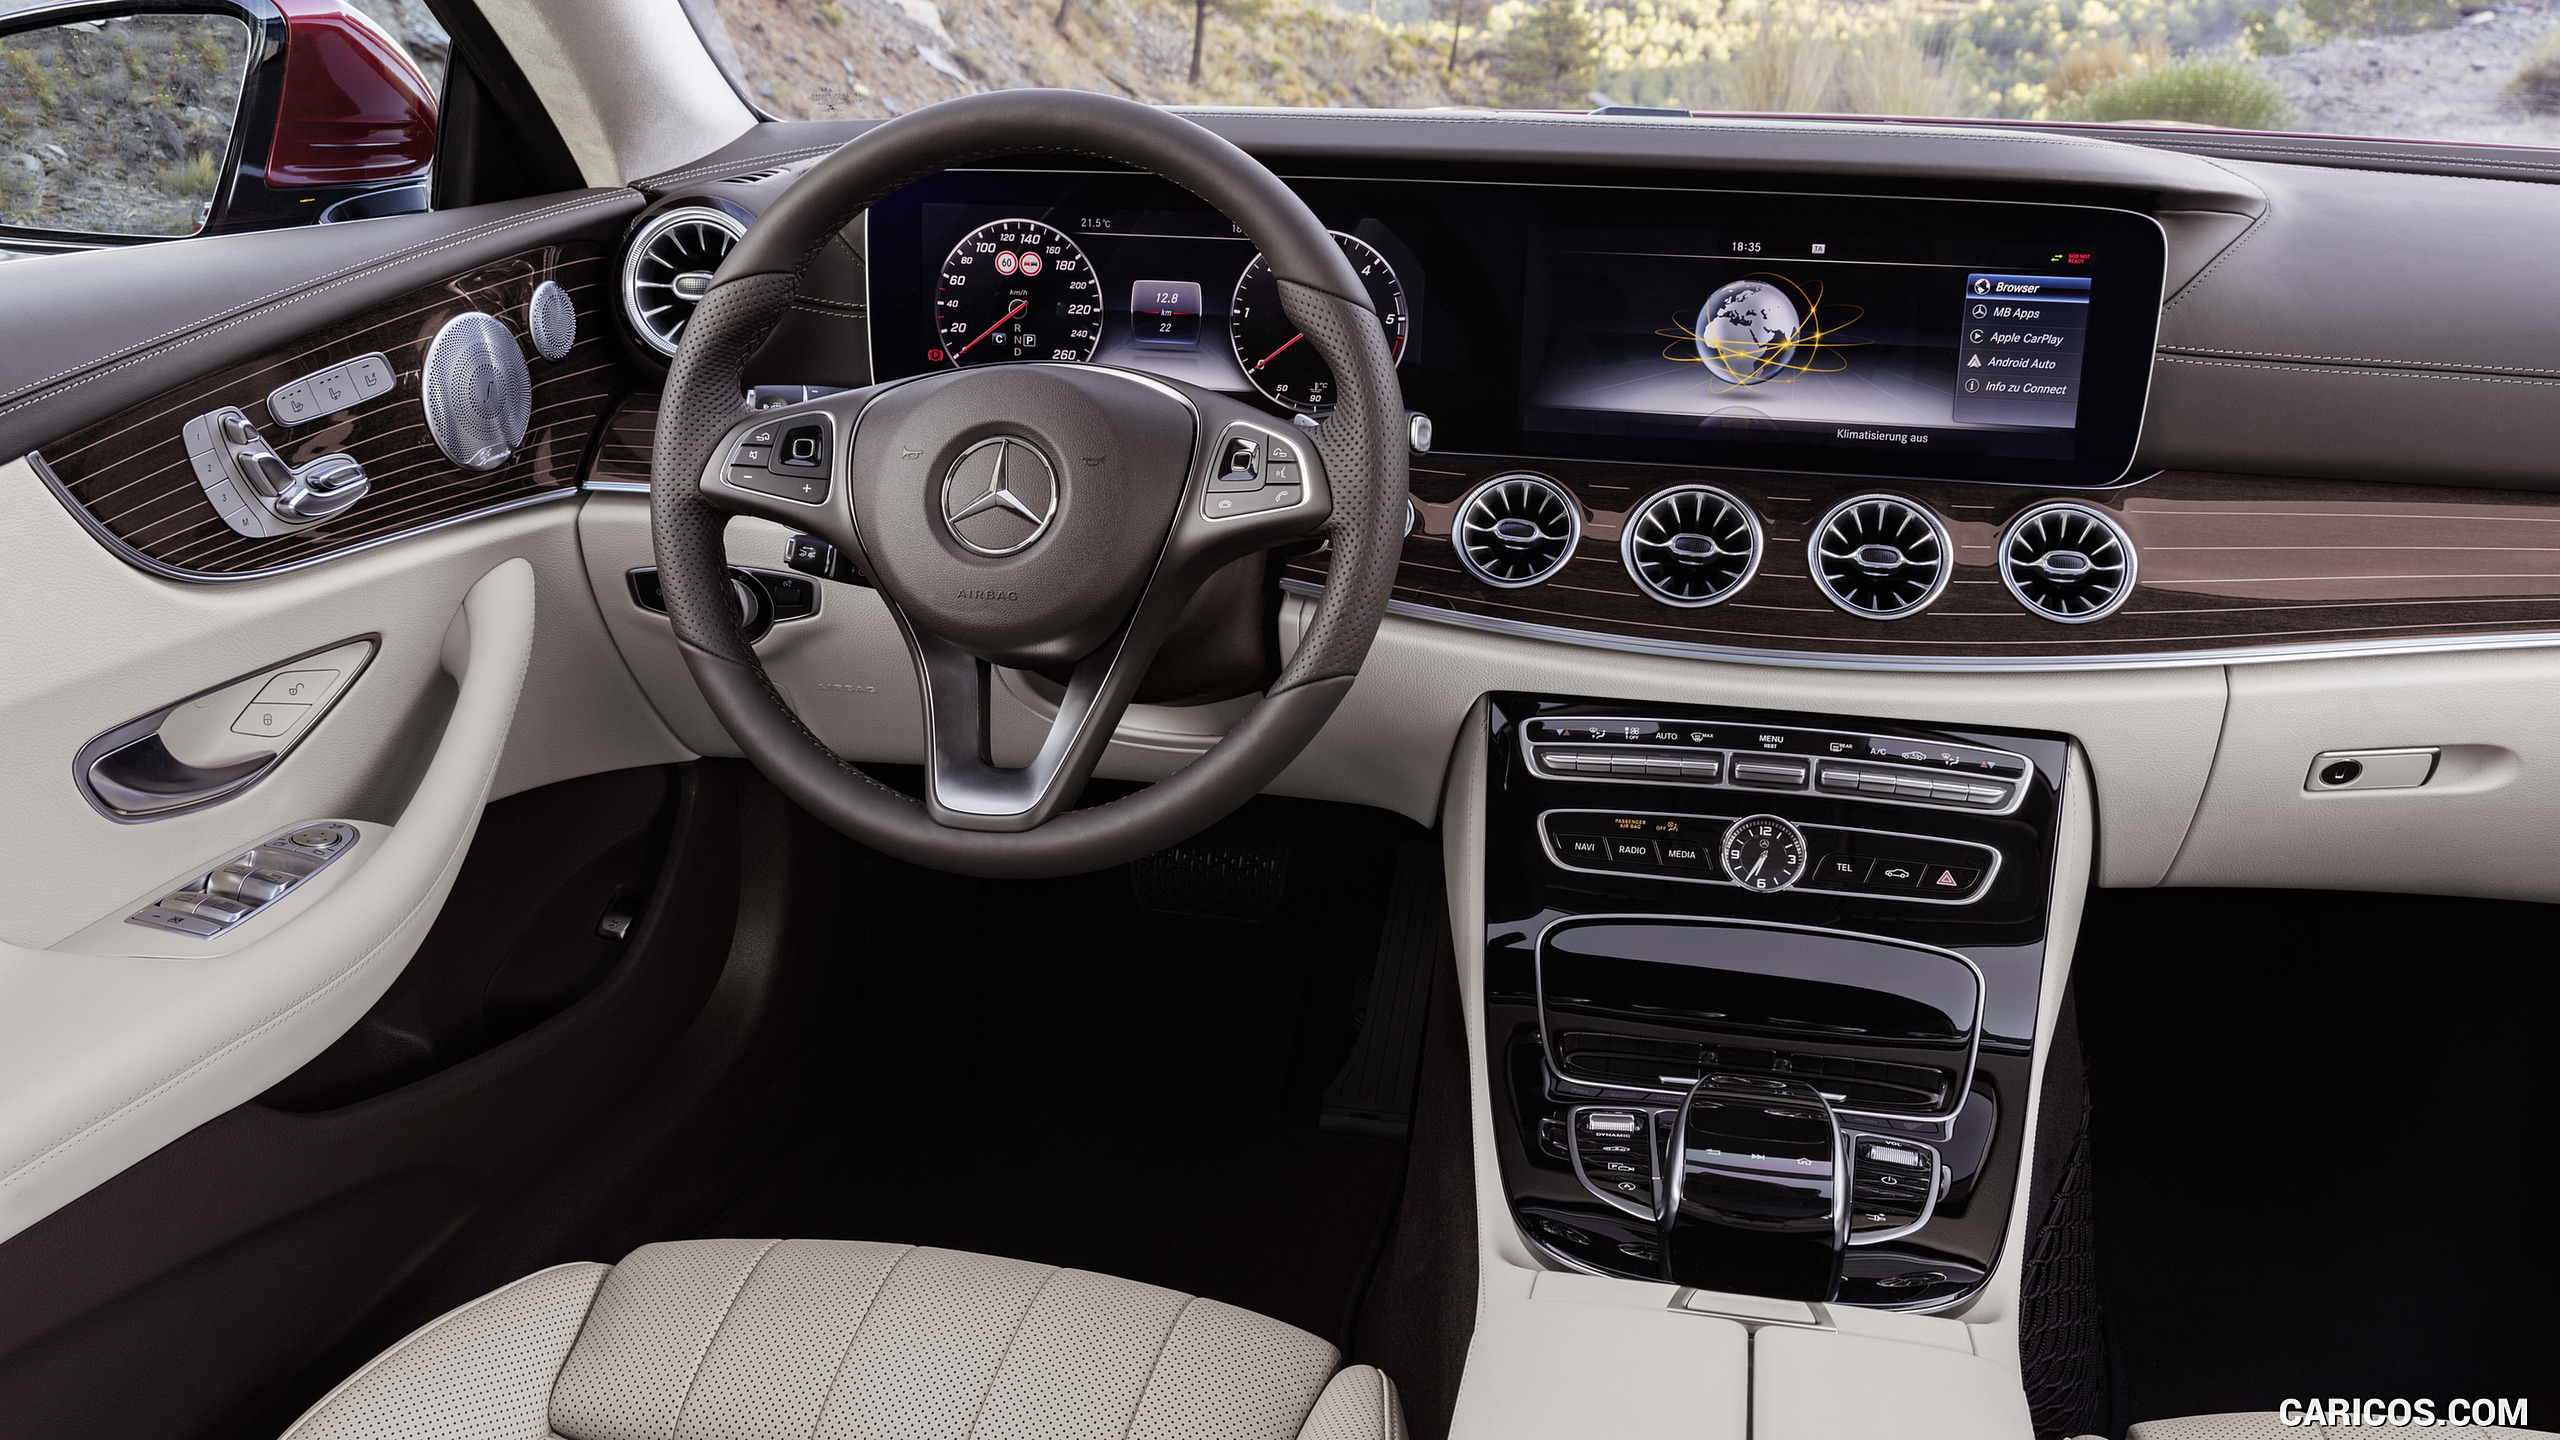 2018 Mercedes-Benz E-Class Coupe - Macchiato Beige / Espresso Brown Leather Interior, Cockpit, #15 of 365